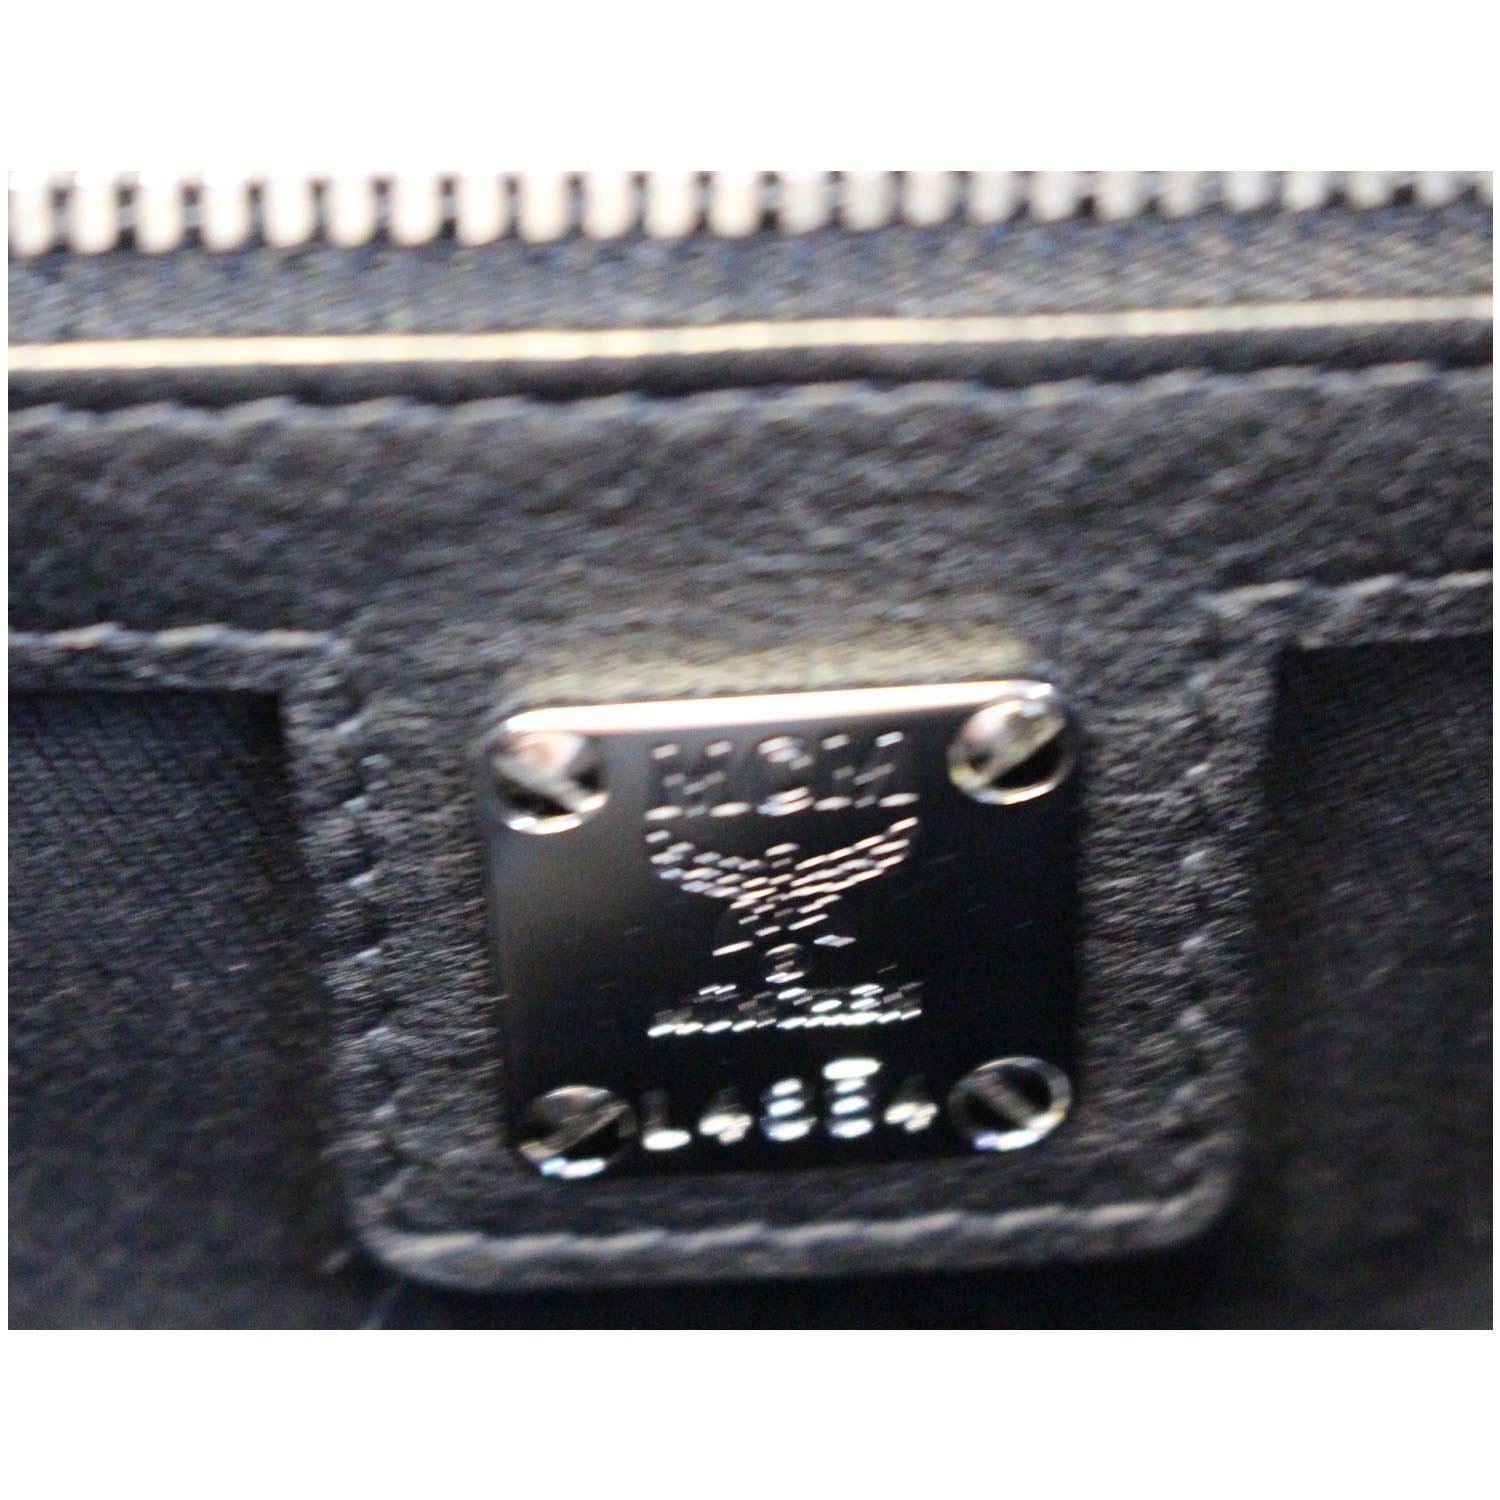 MCM Klara Large Hobo Monogram Leather Black Tan Zipper Top Bag Crossbody